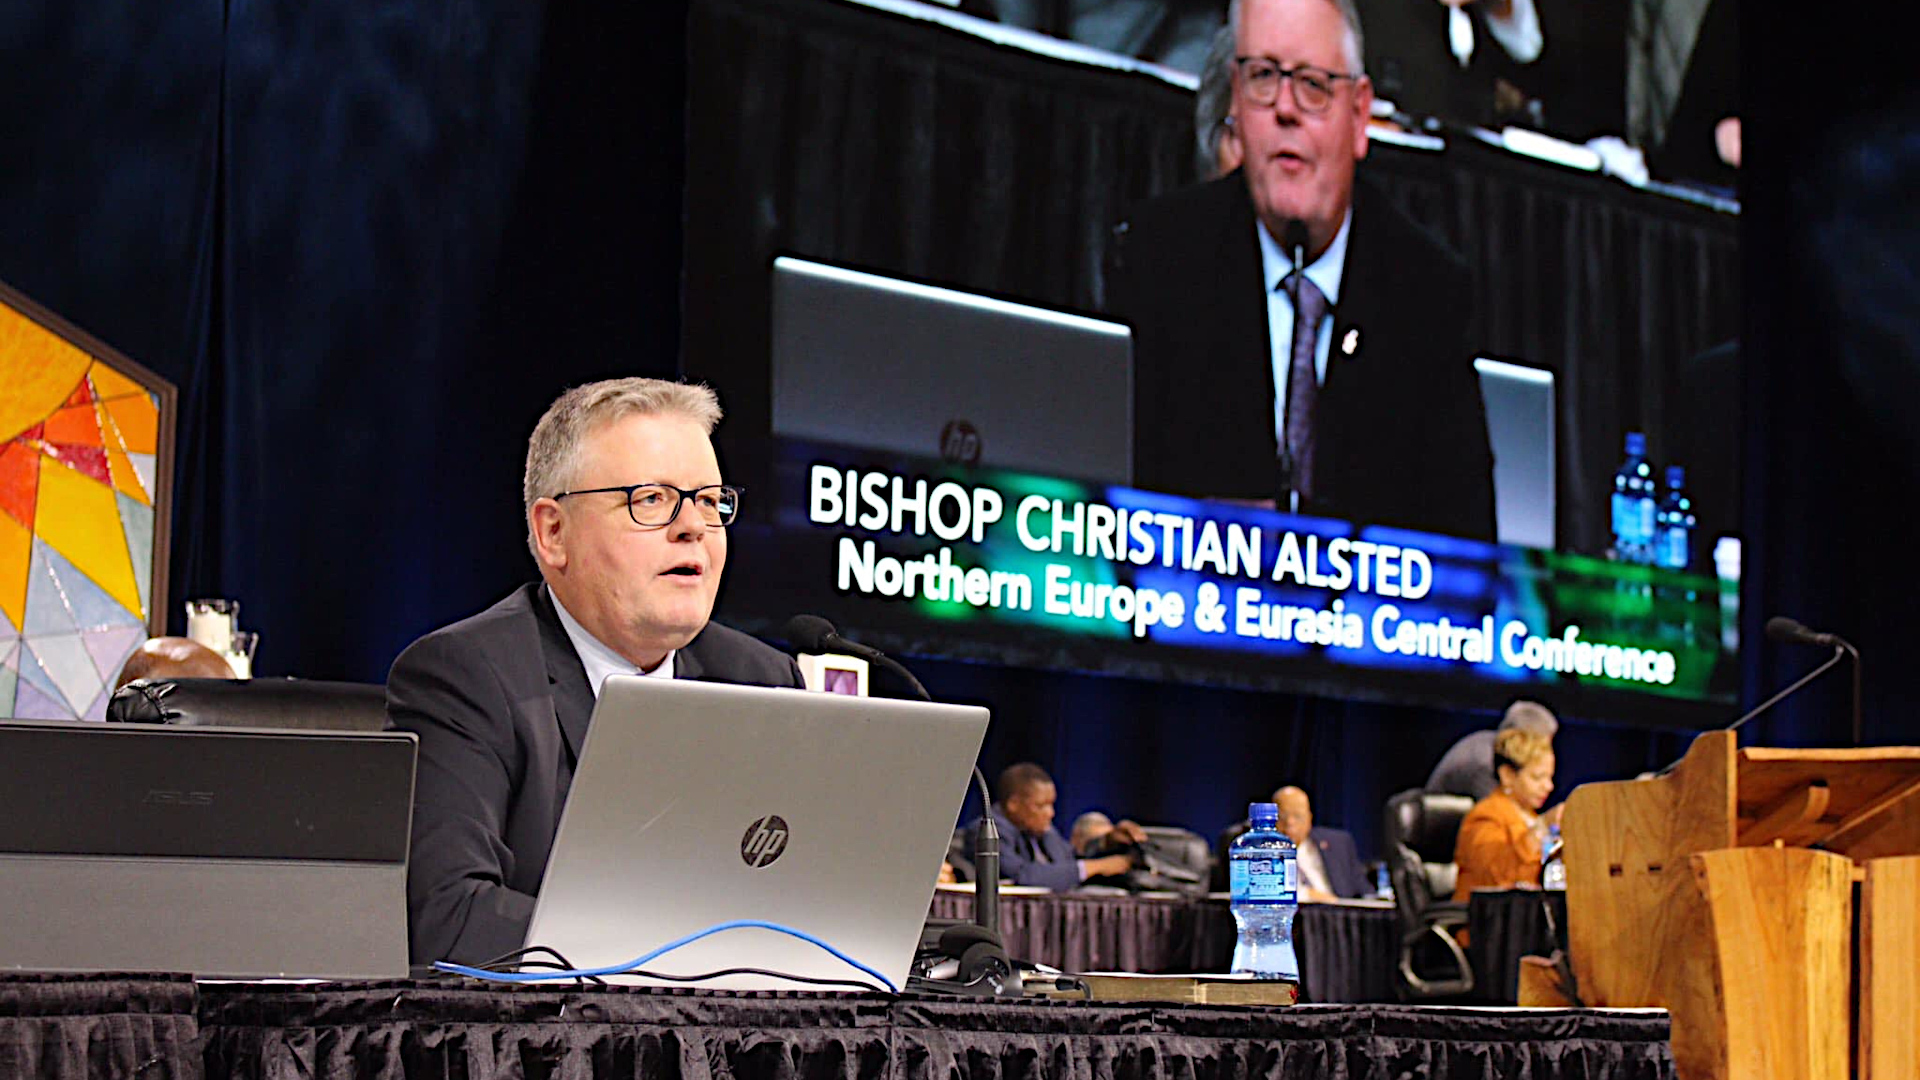 Bishop Christian Alsted